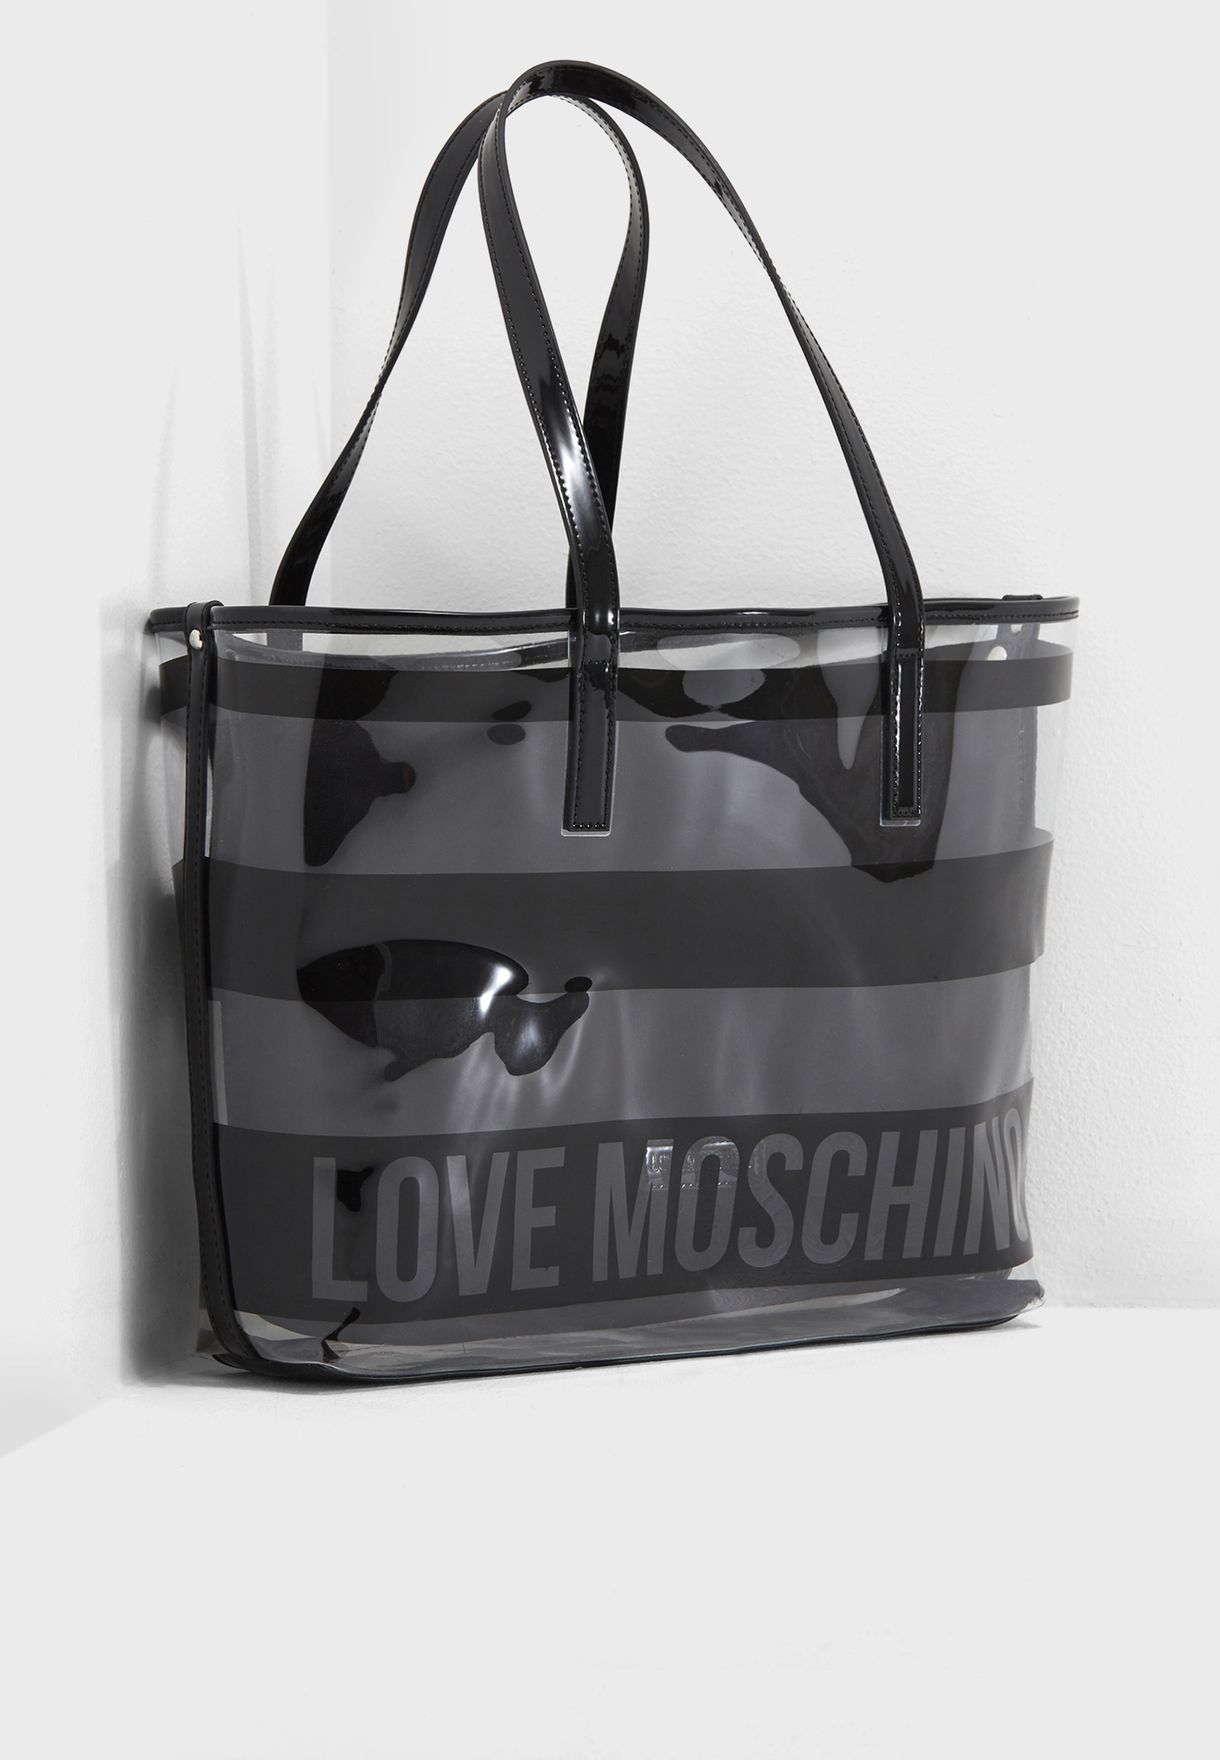 love moschino transparent bag